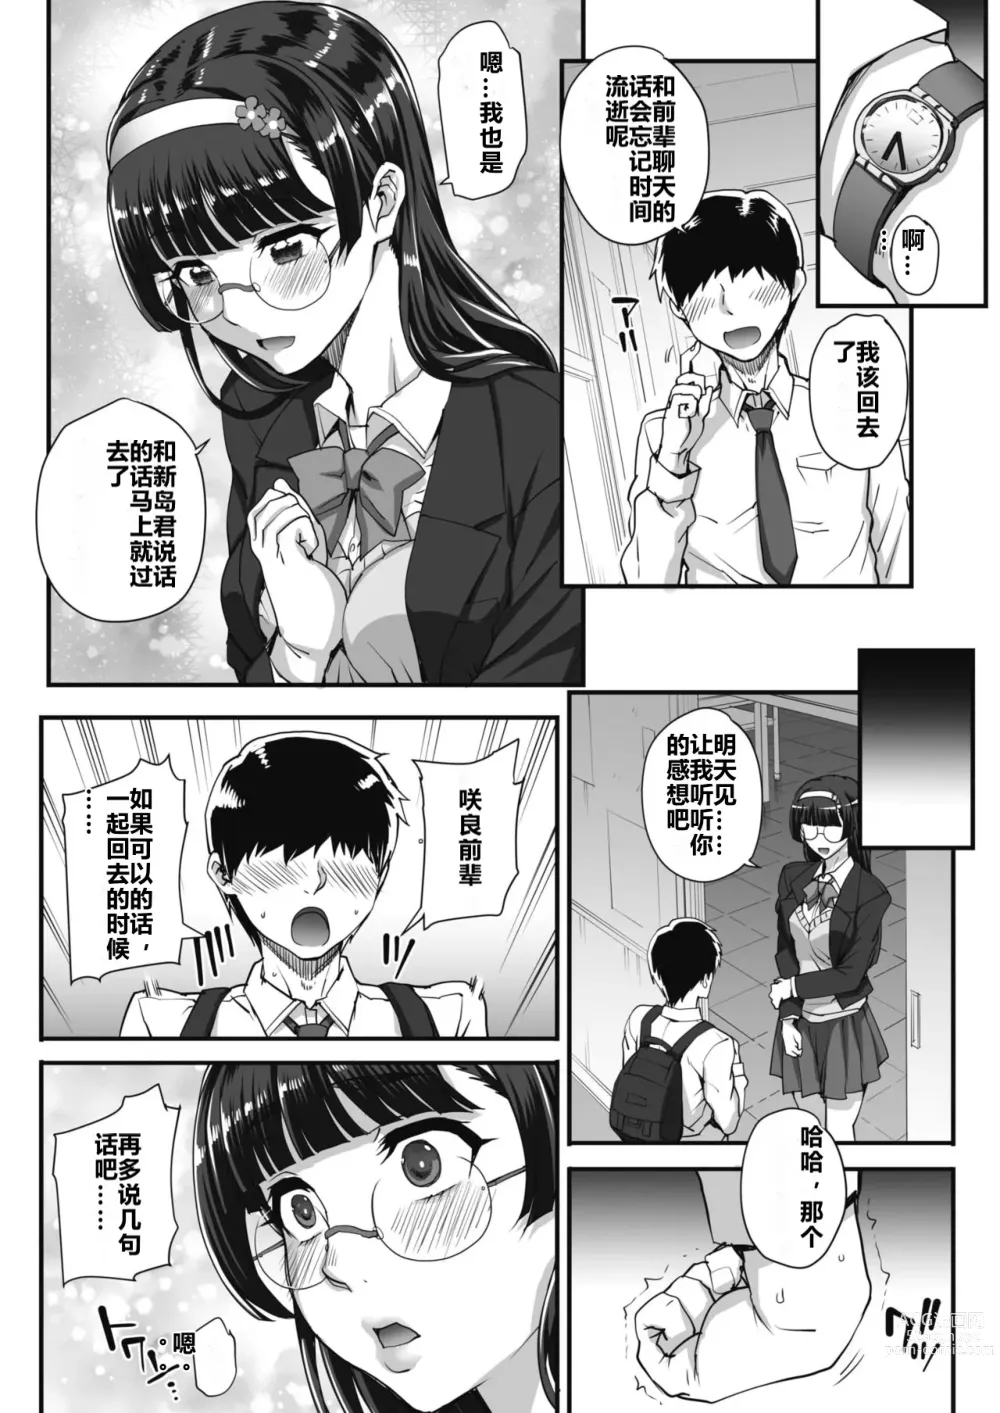 Page 3 of manga 贪恋文学的人们